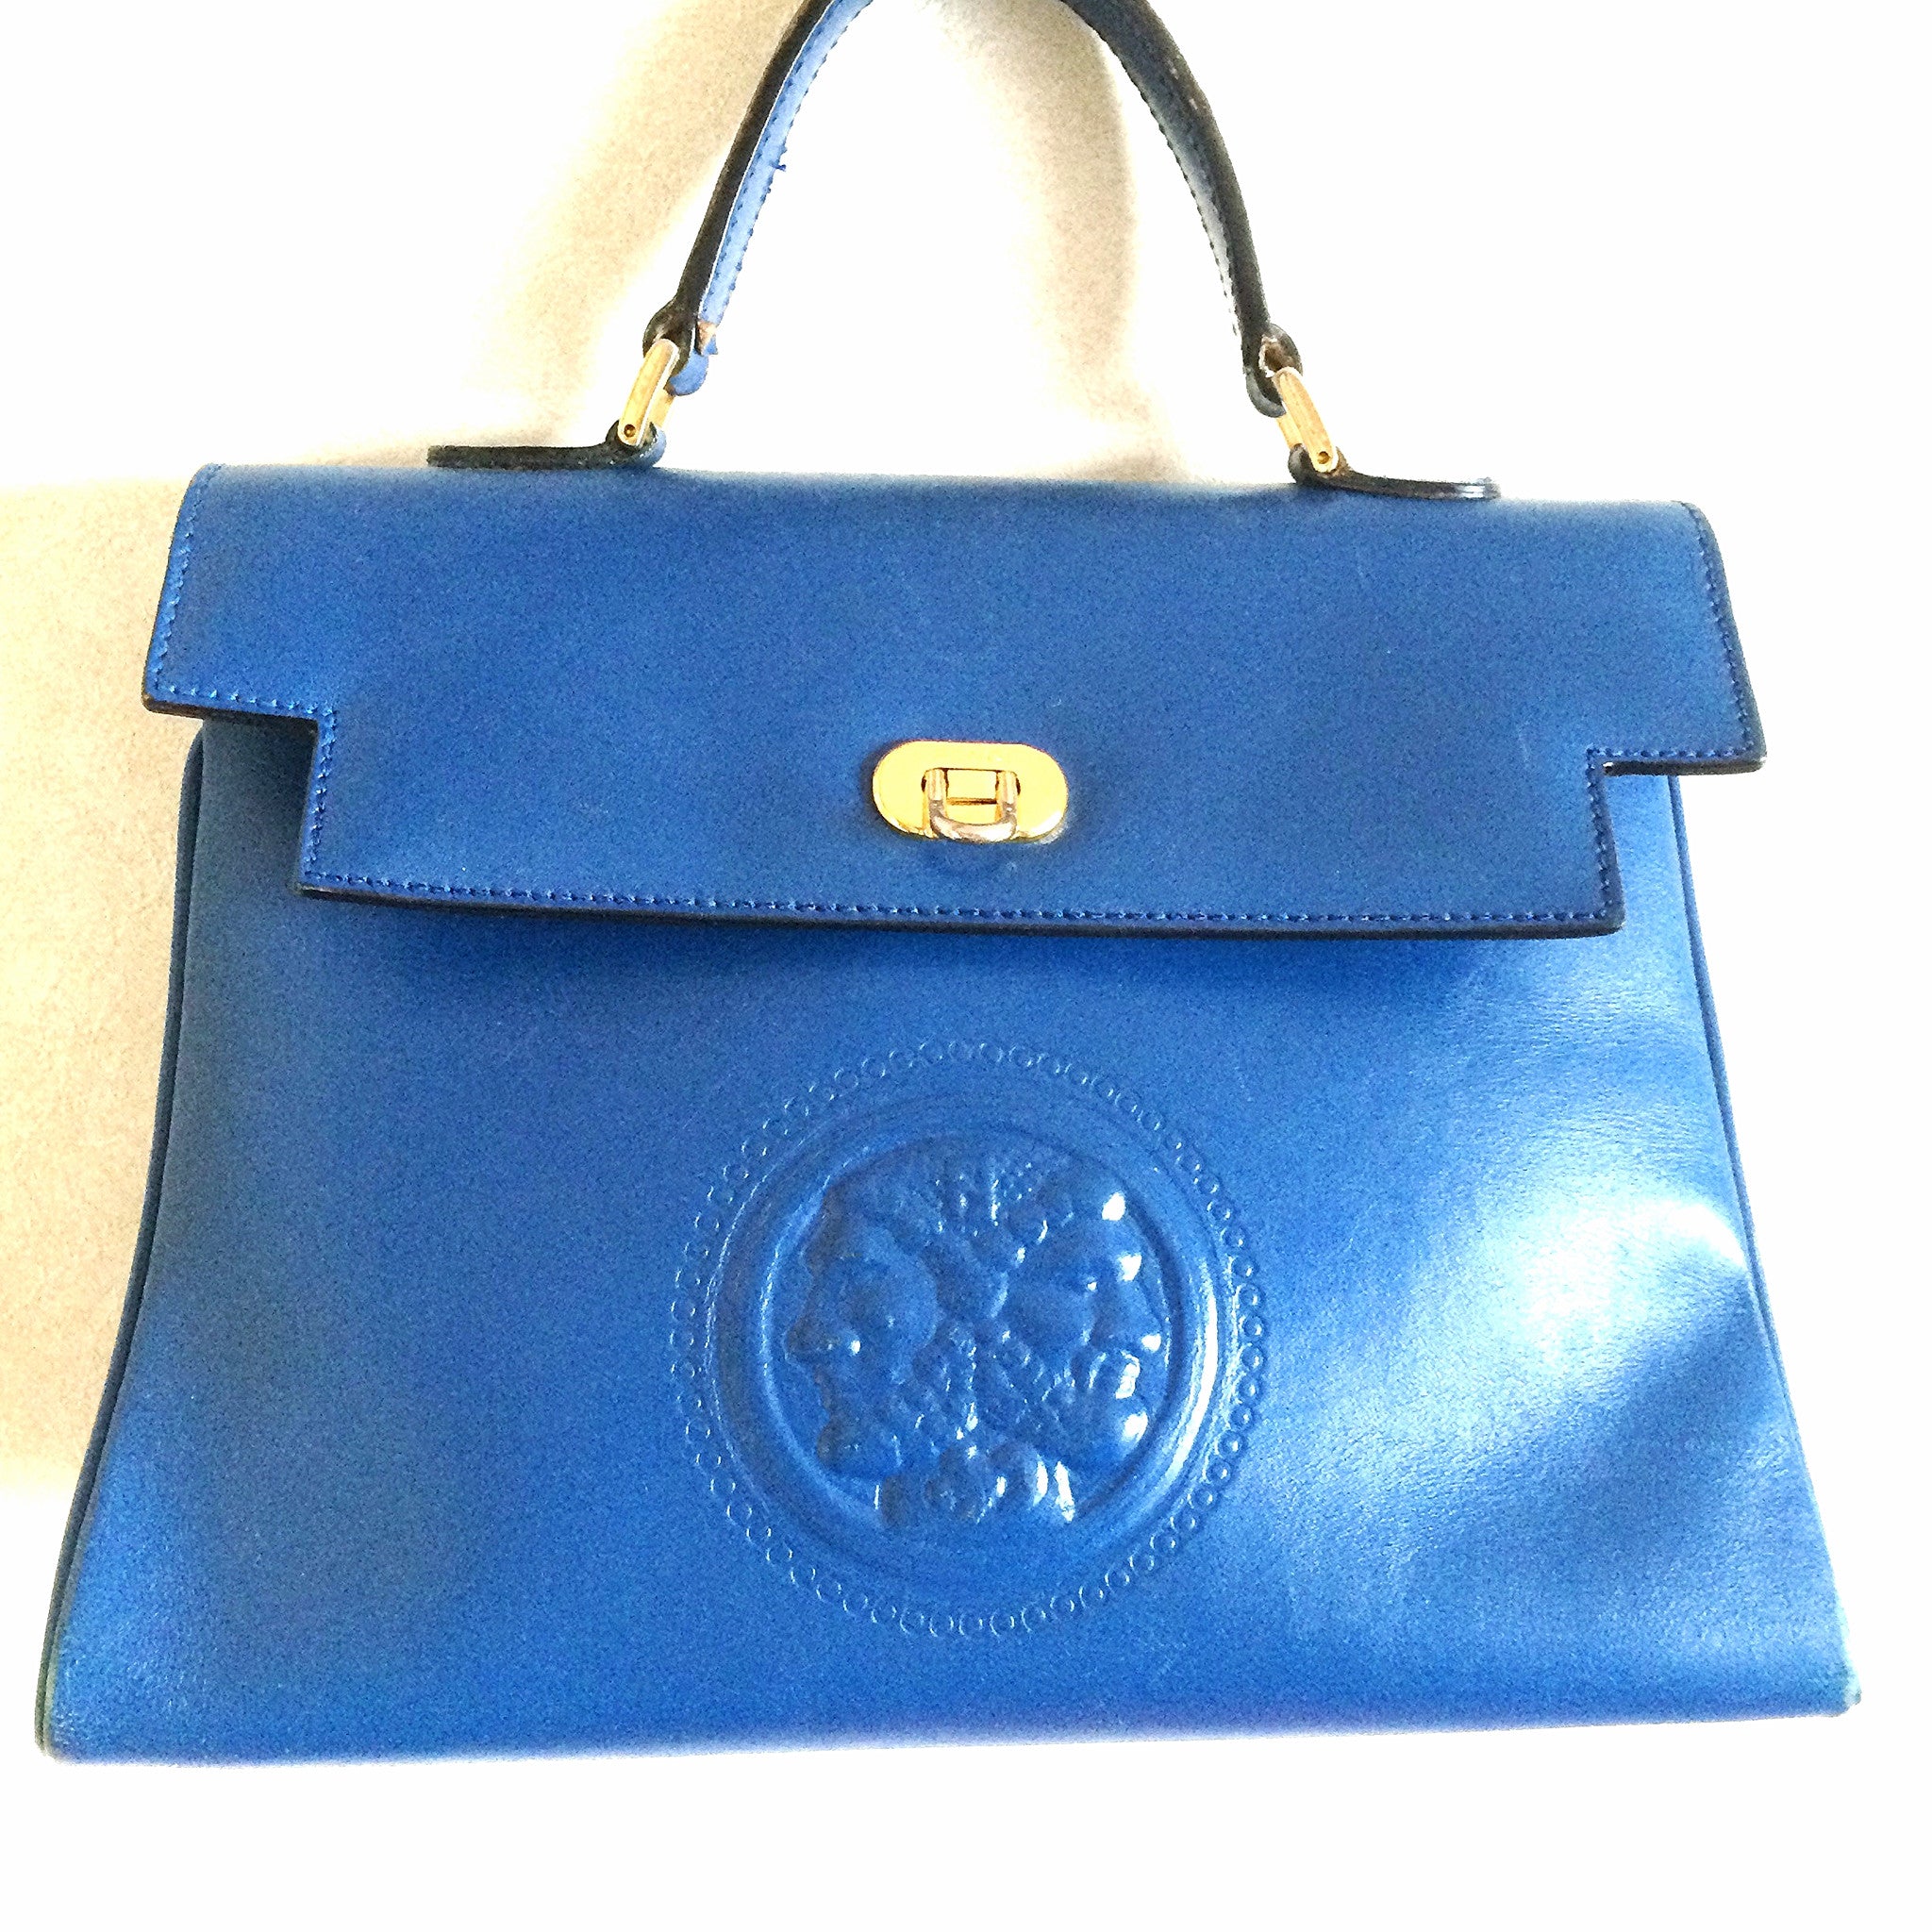 Vintage FENDI blue leather classic kelly style handbag with iconic Jan